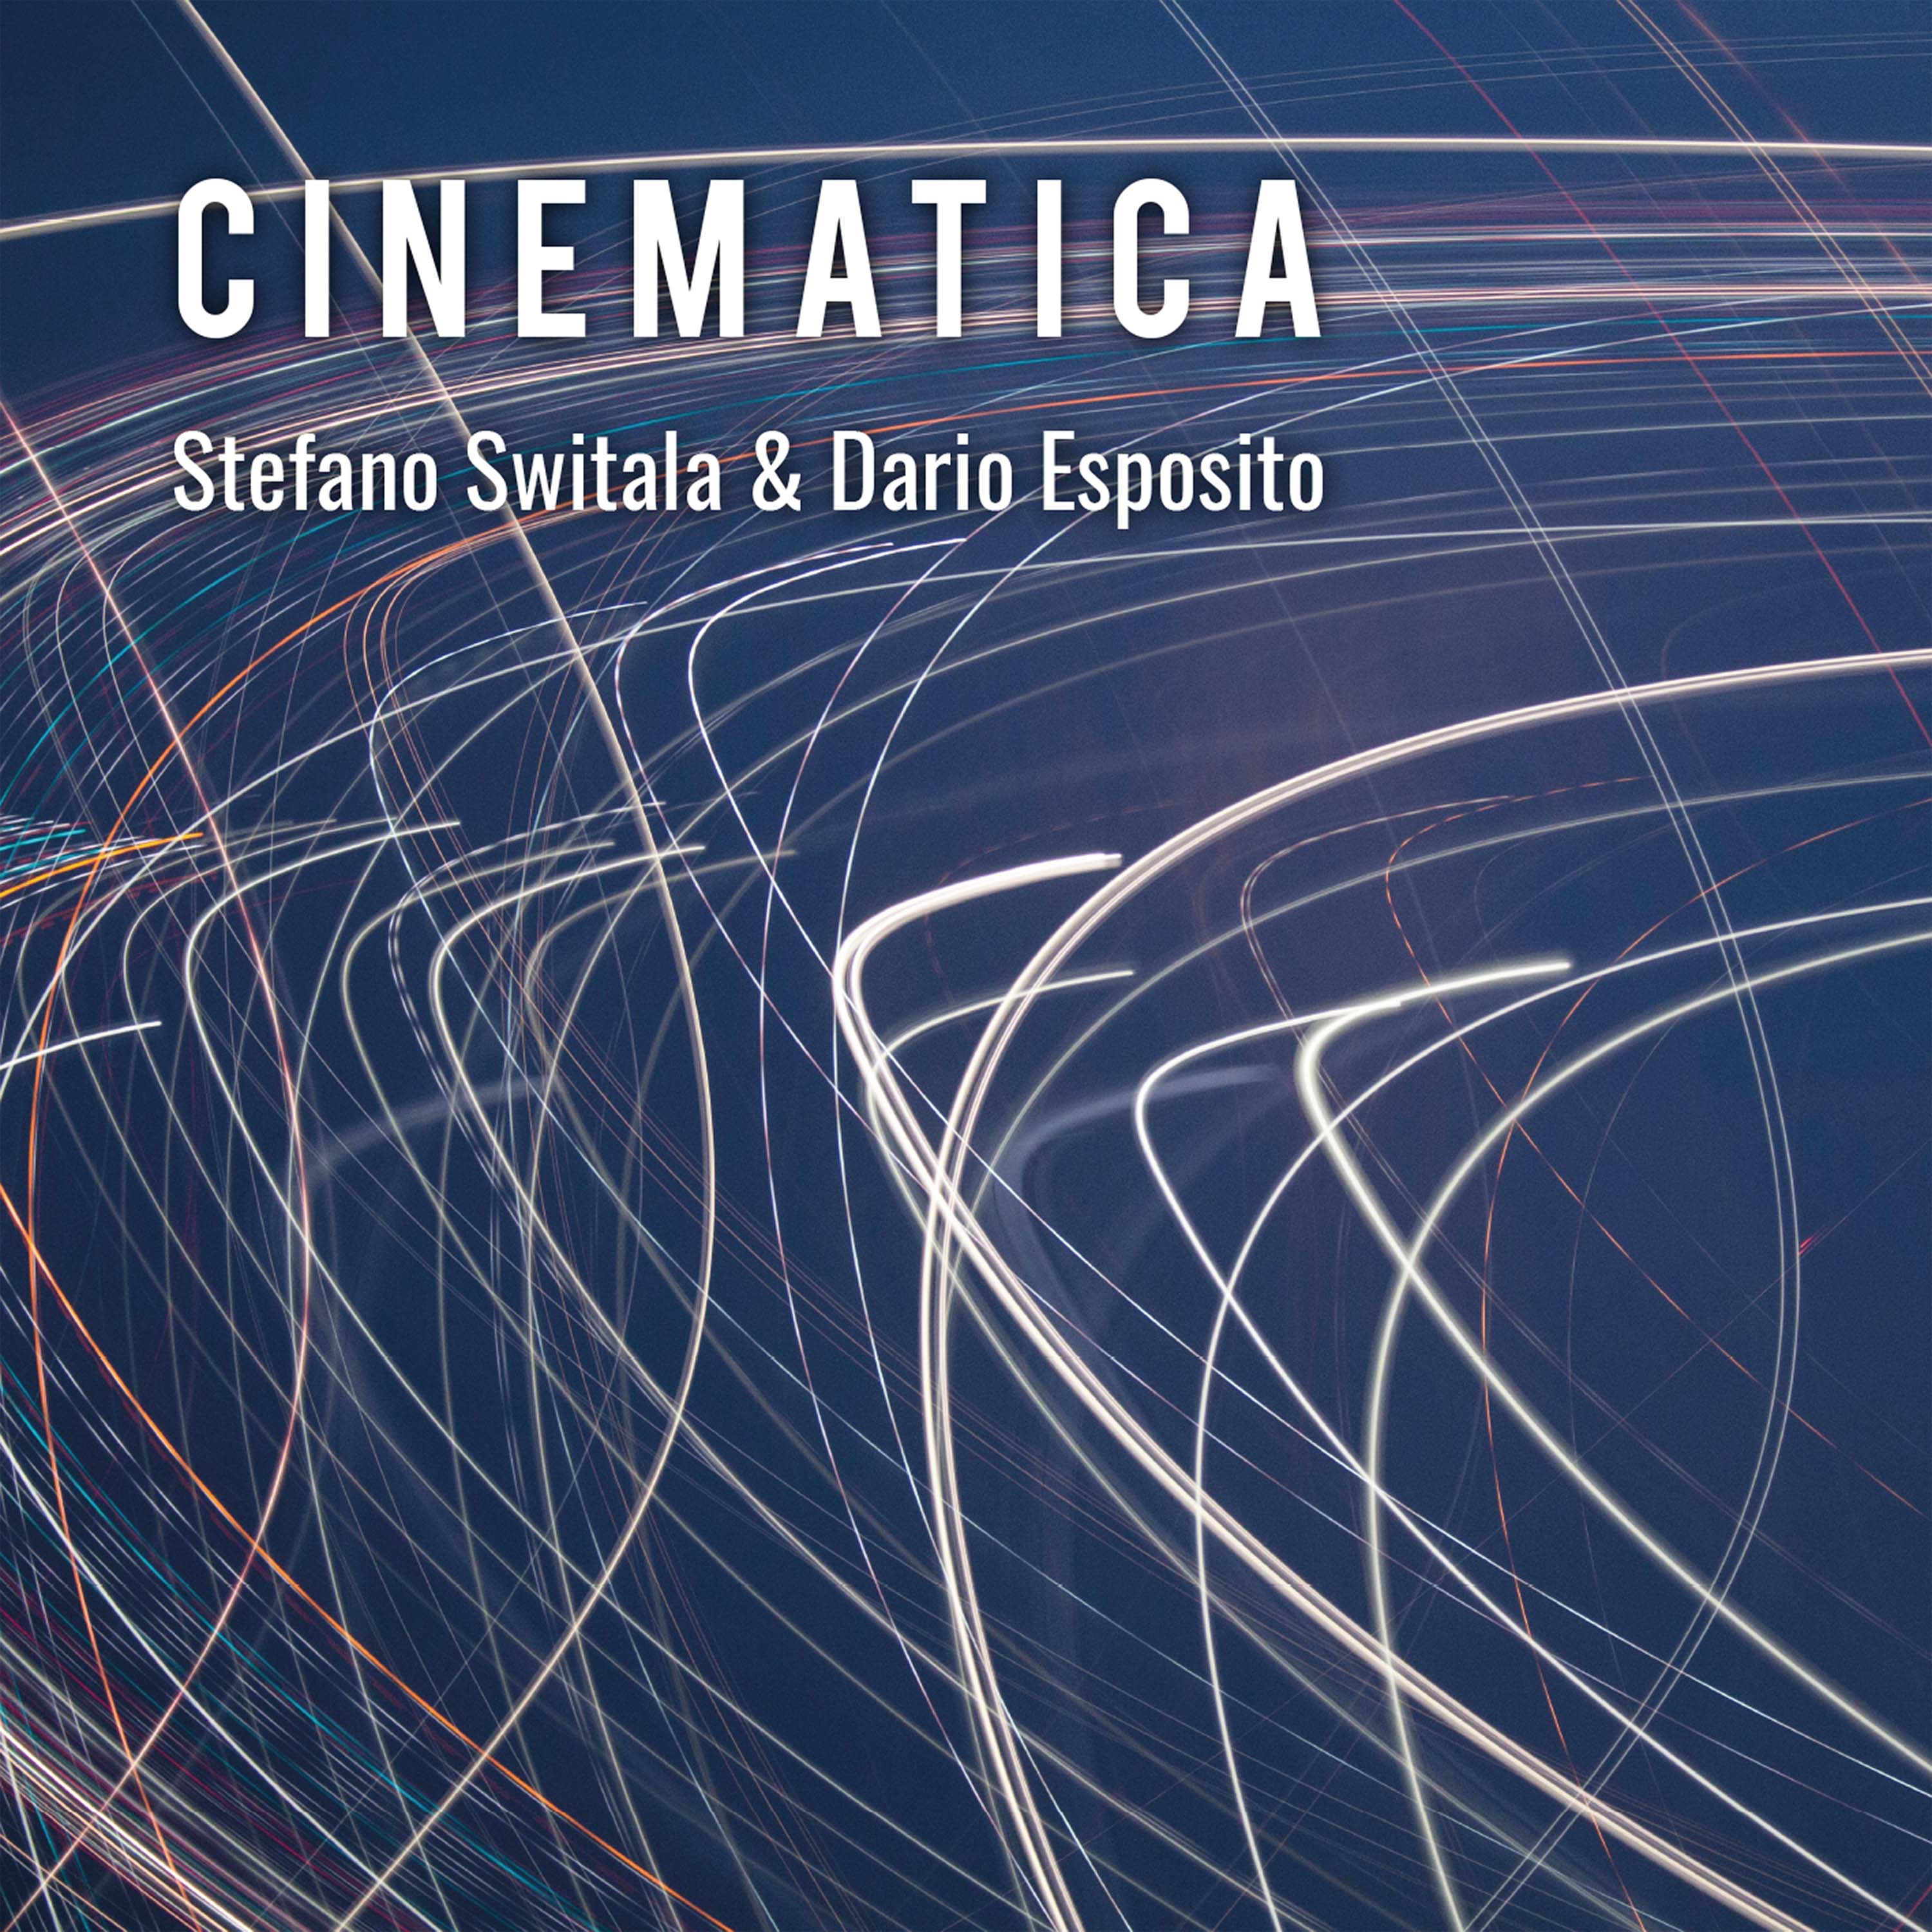 CINEMATICA è finalmente disponibile su tutte le piattaforme digitali!